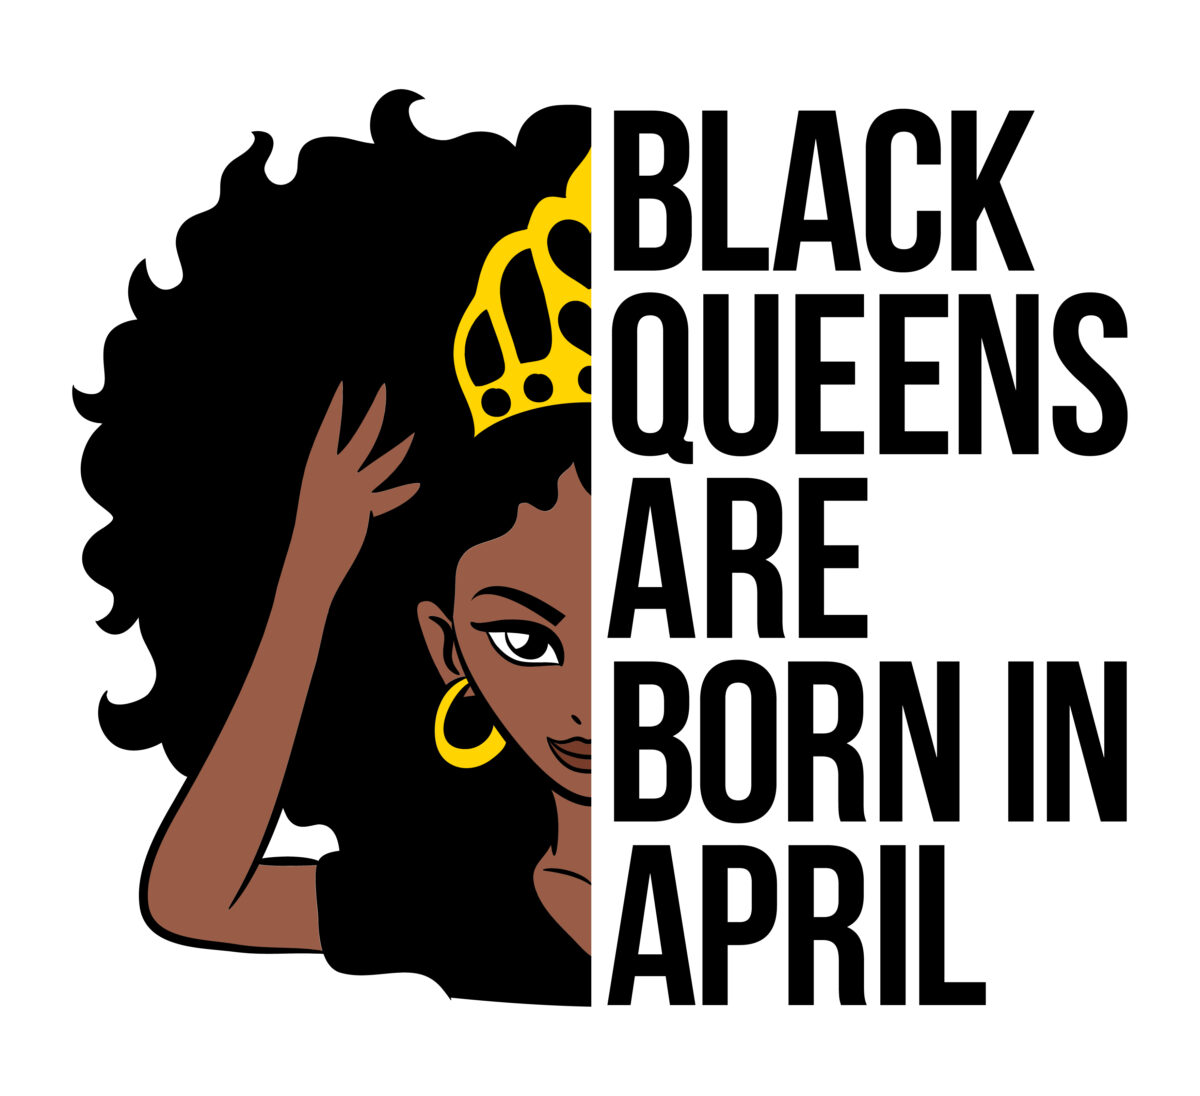 Black queens are born in april Svg